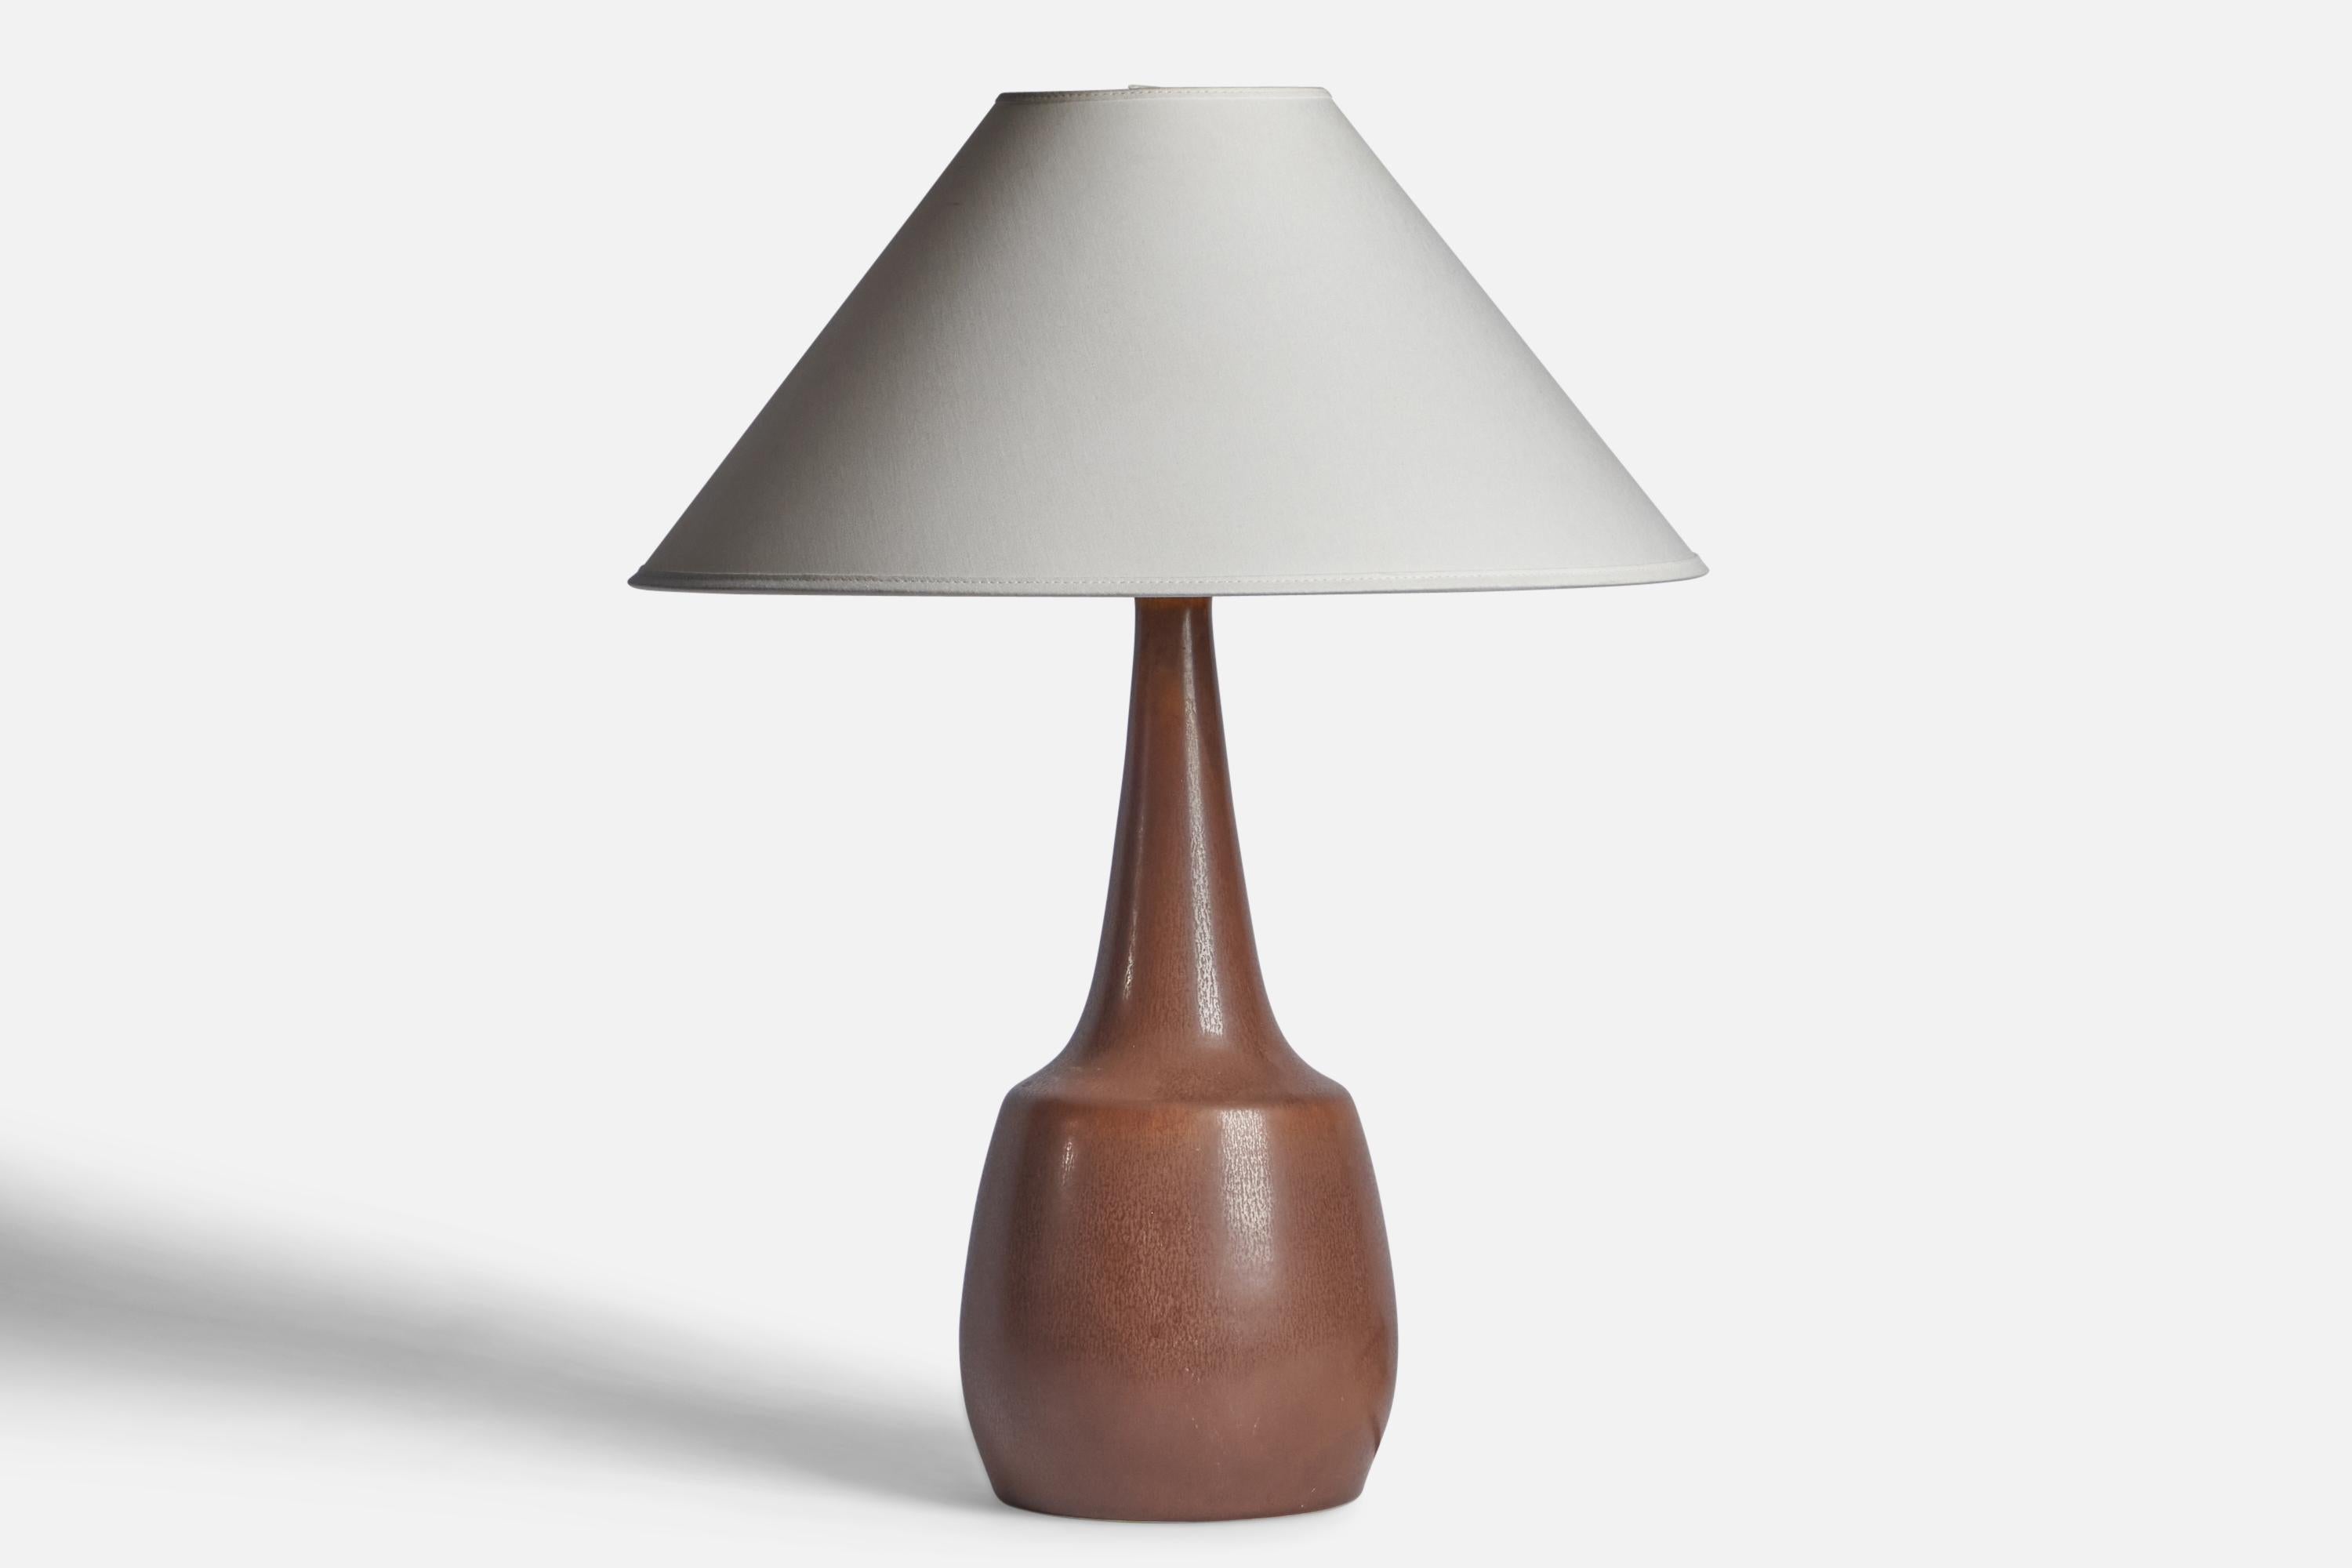 Tischlampe aus braun glasiertem Steingut, entworfen von Per & Annelise Linneman-Schmidt, hergestellt von Palshus, Dänemark, 1960er Jahre.

Abmessungen der Lampe (Zoll): 16,75